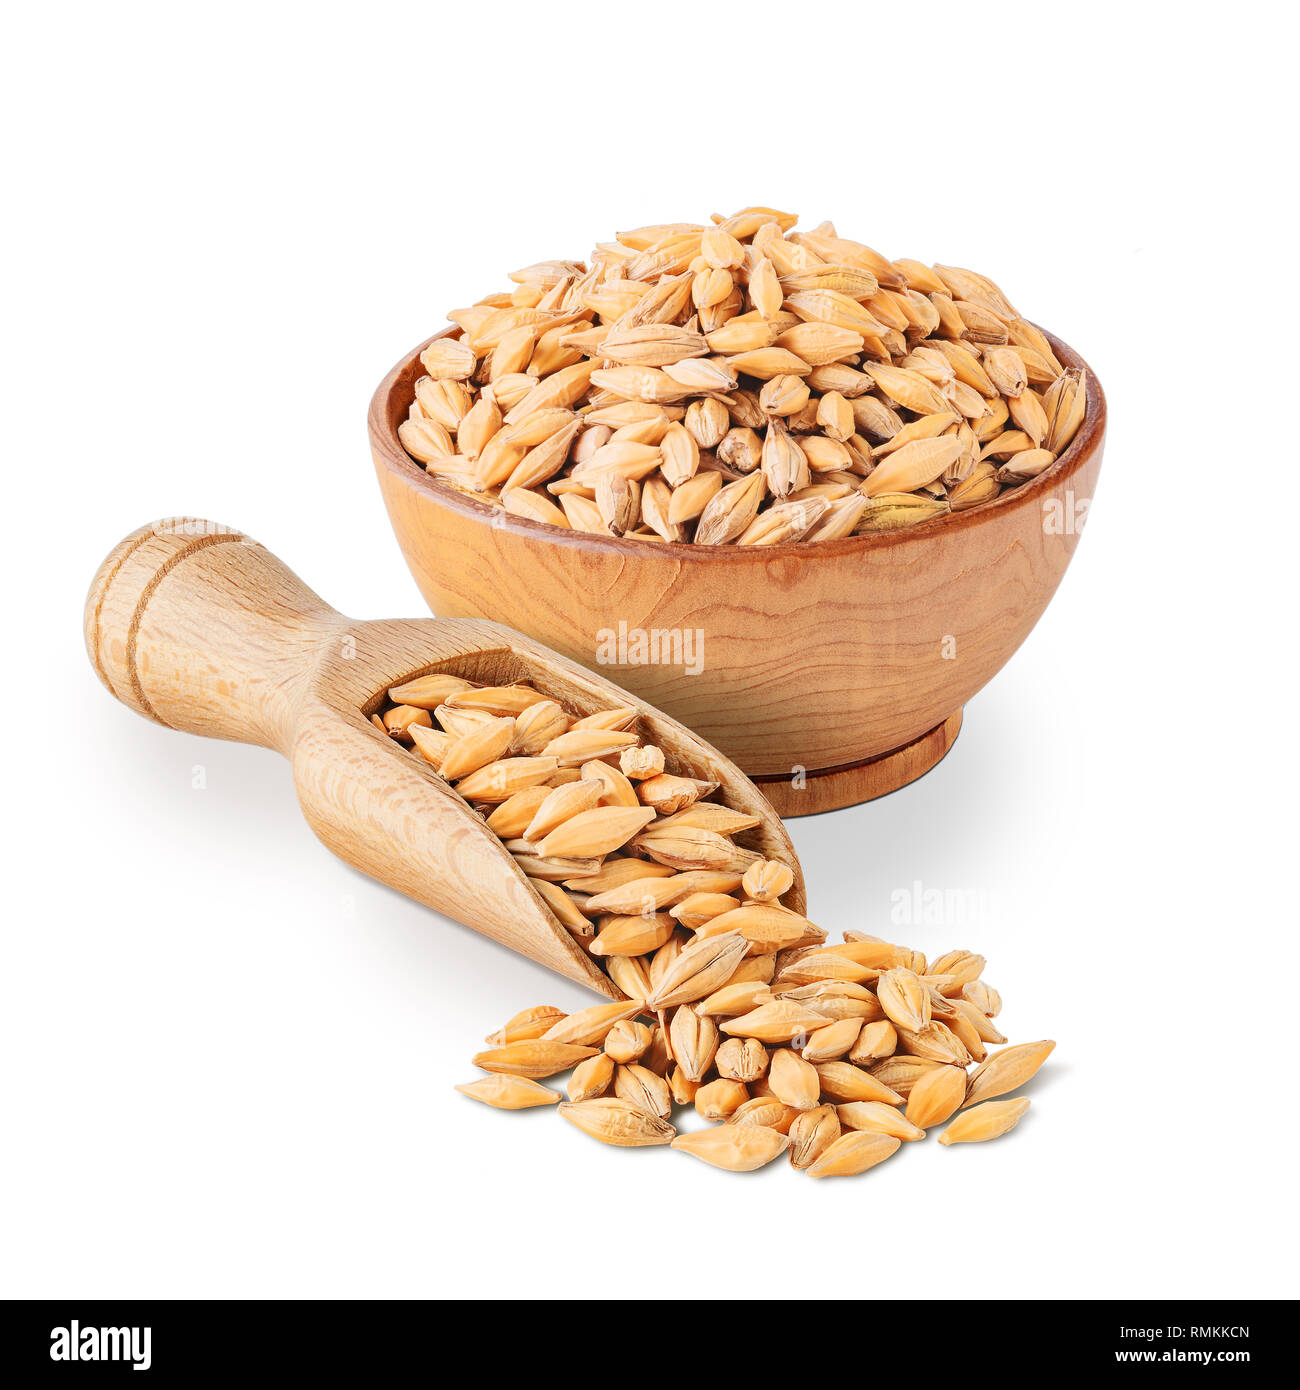 Barley seeds isolated on white background. Stock Photo